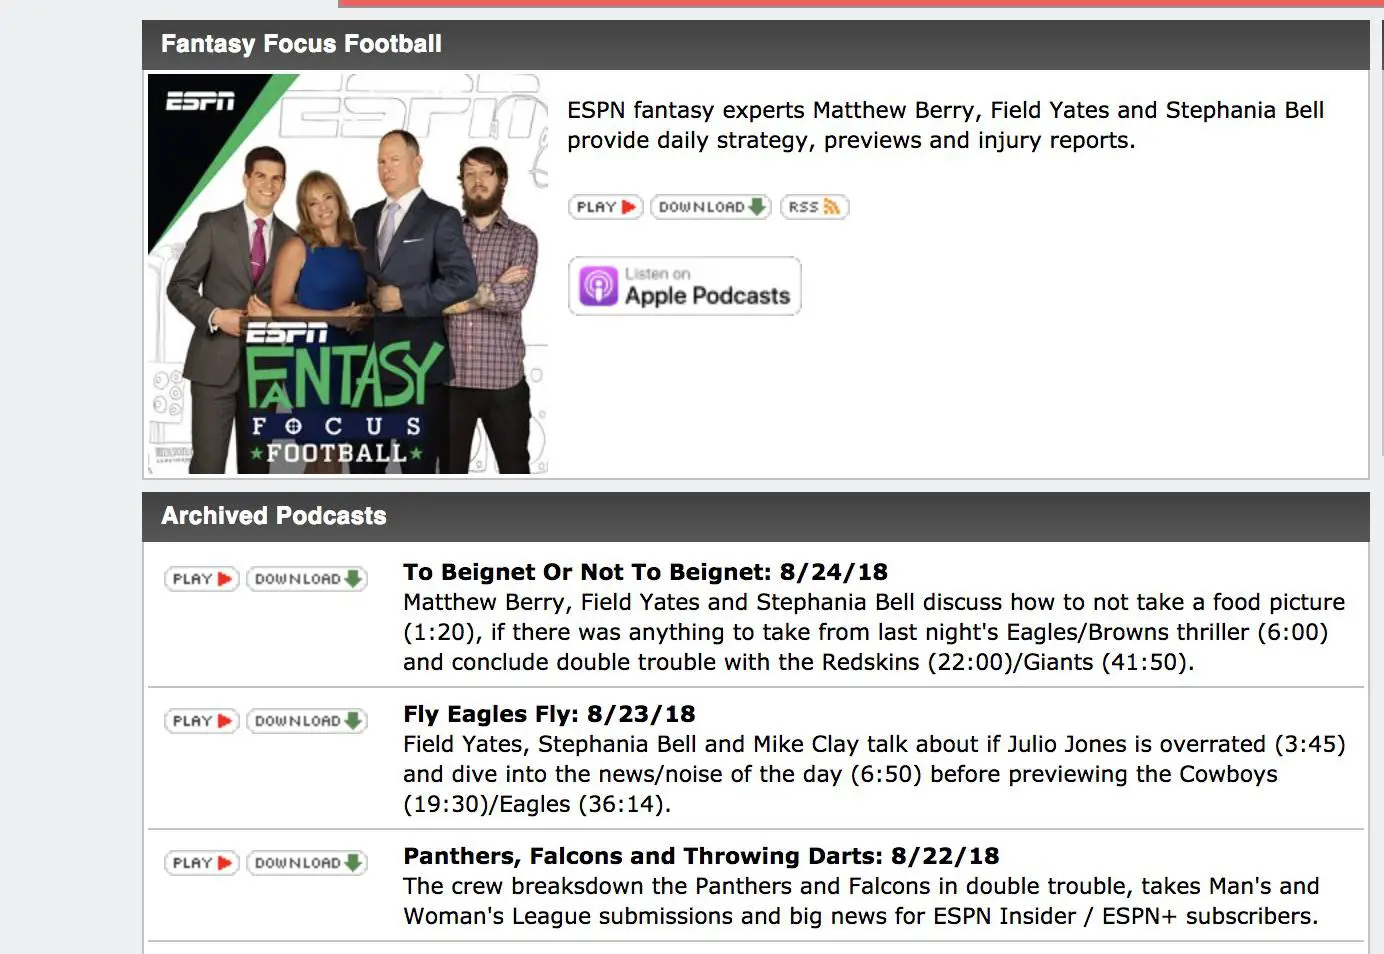 Captura de tela da página do podcast do Fantasy Focus Football no site da ESPN.